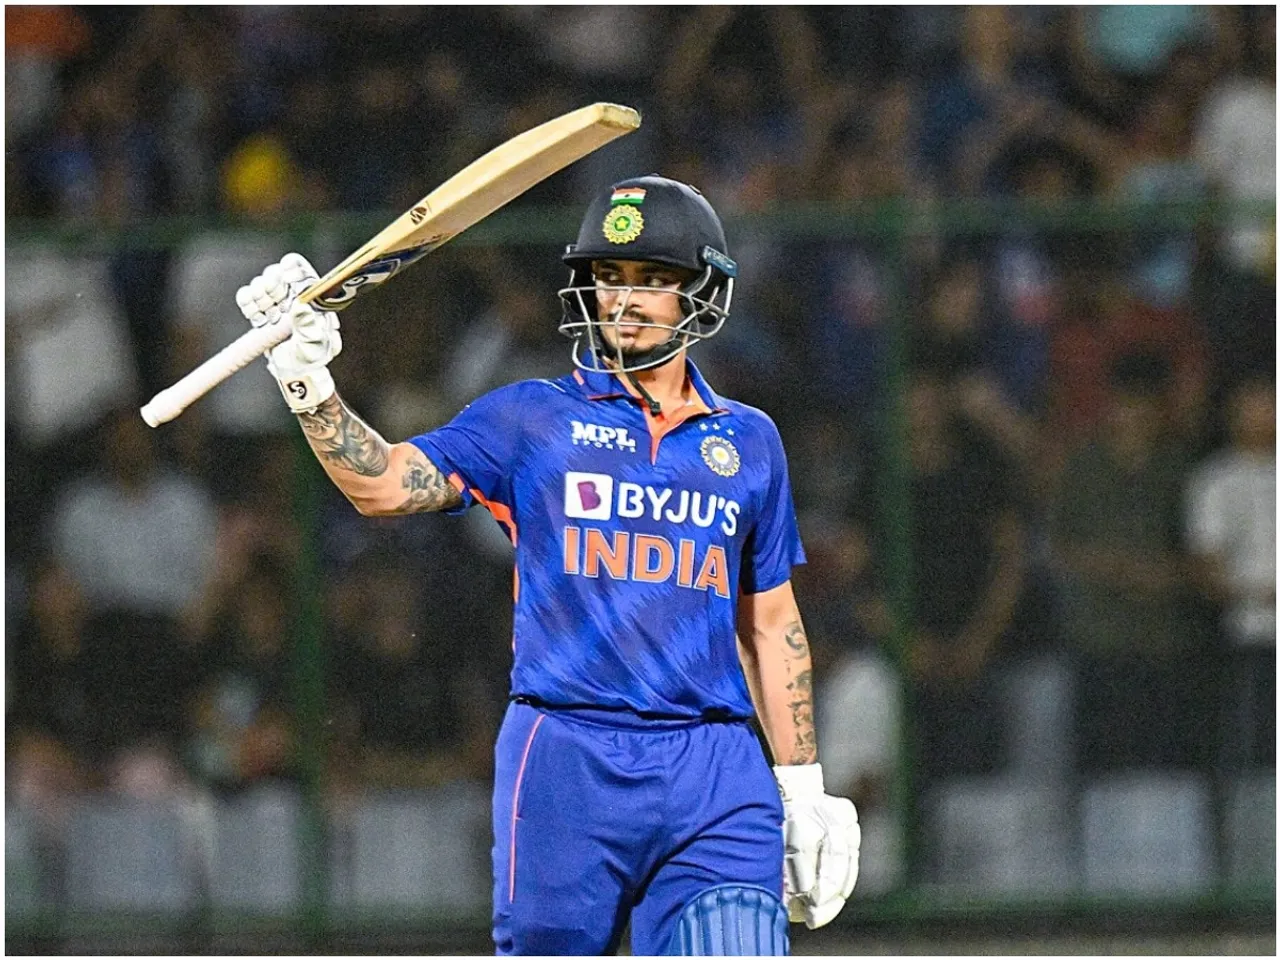 IND Vs AUS : भारत बनाम ऑस्ट्रेलिया सीरीज में इन 5 बल्लेबाजों पर रहेगी सभी की नजर